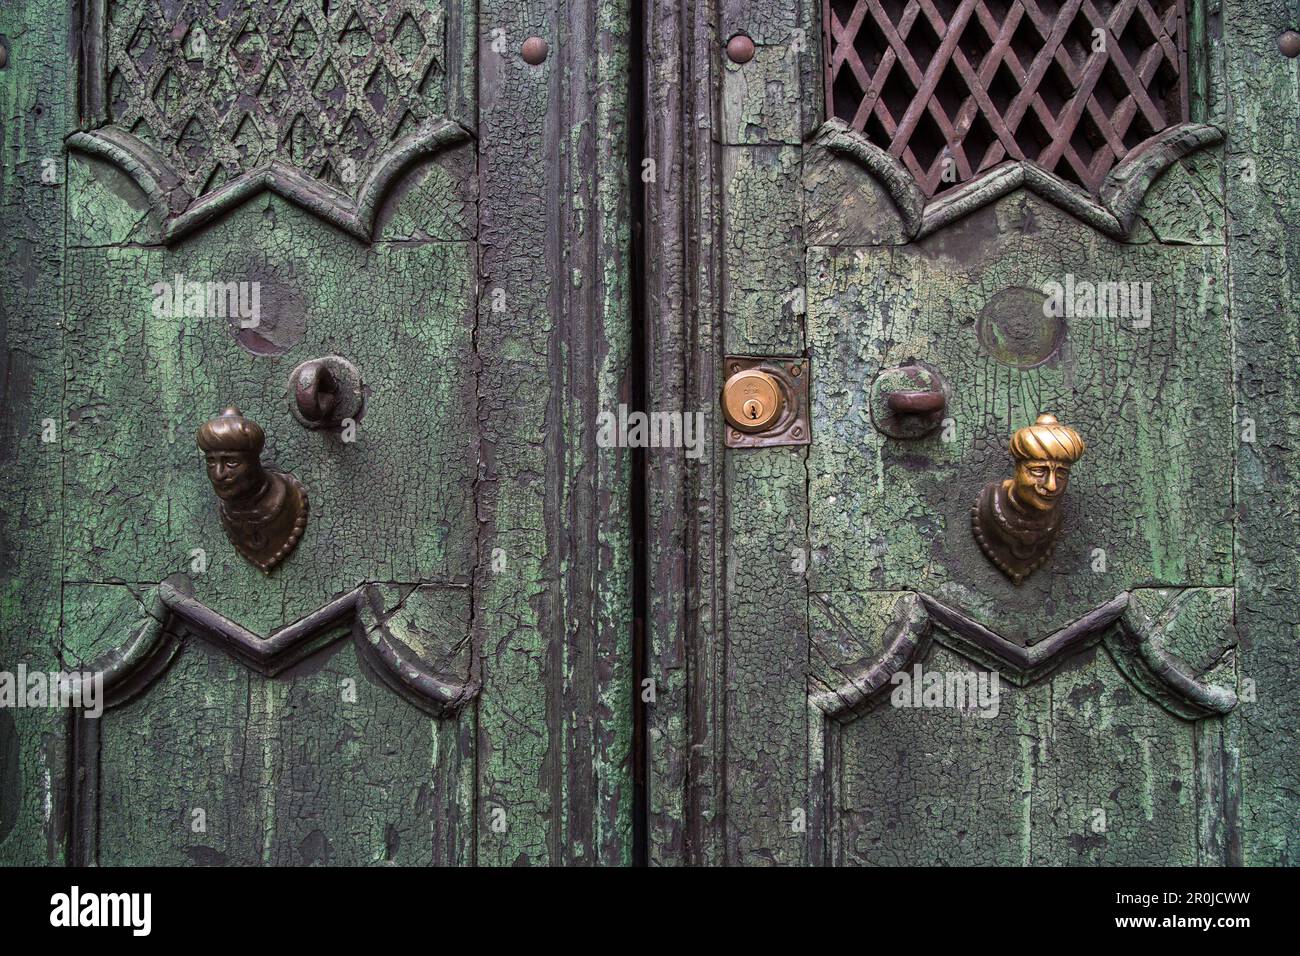 Manillas de puertas doradas de estilo barroco, perillas de puertas